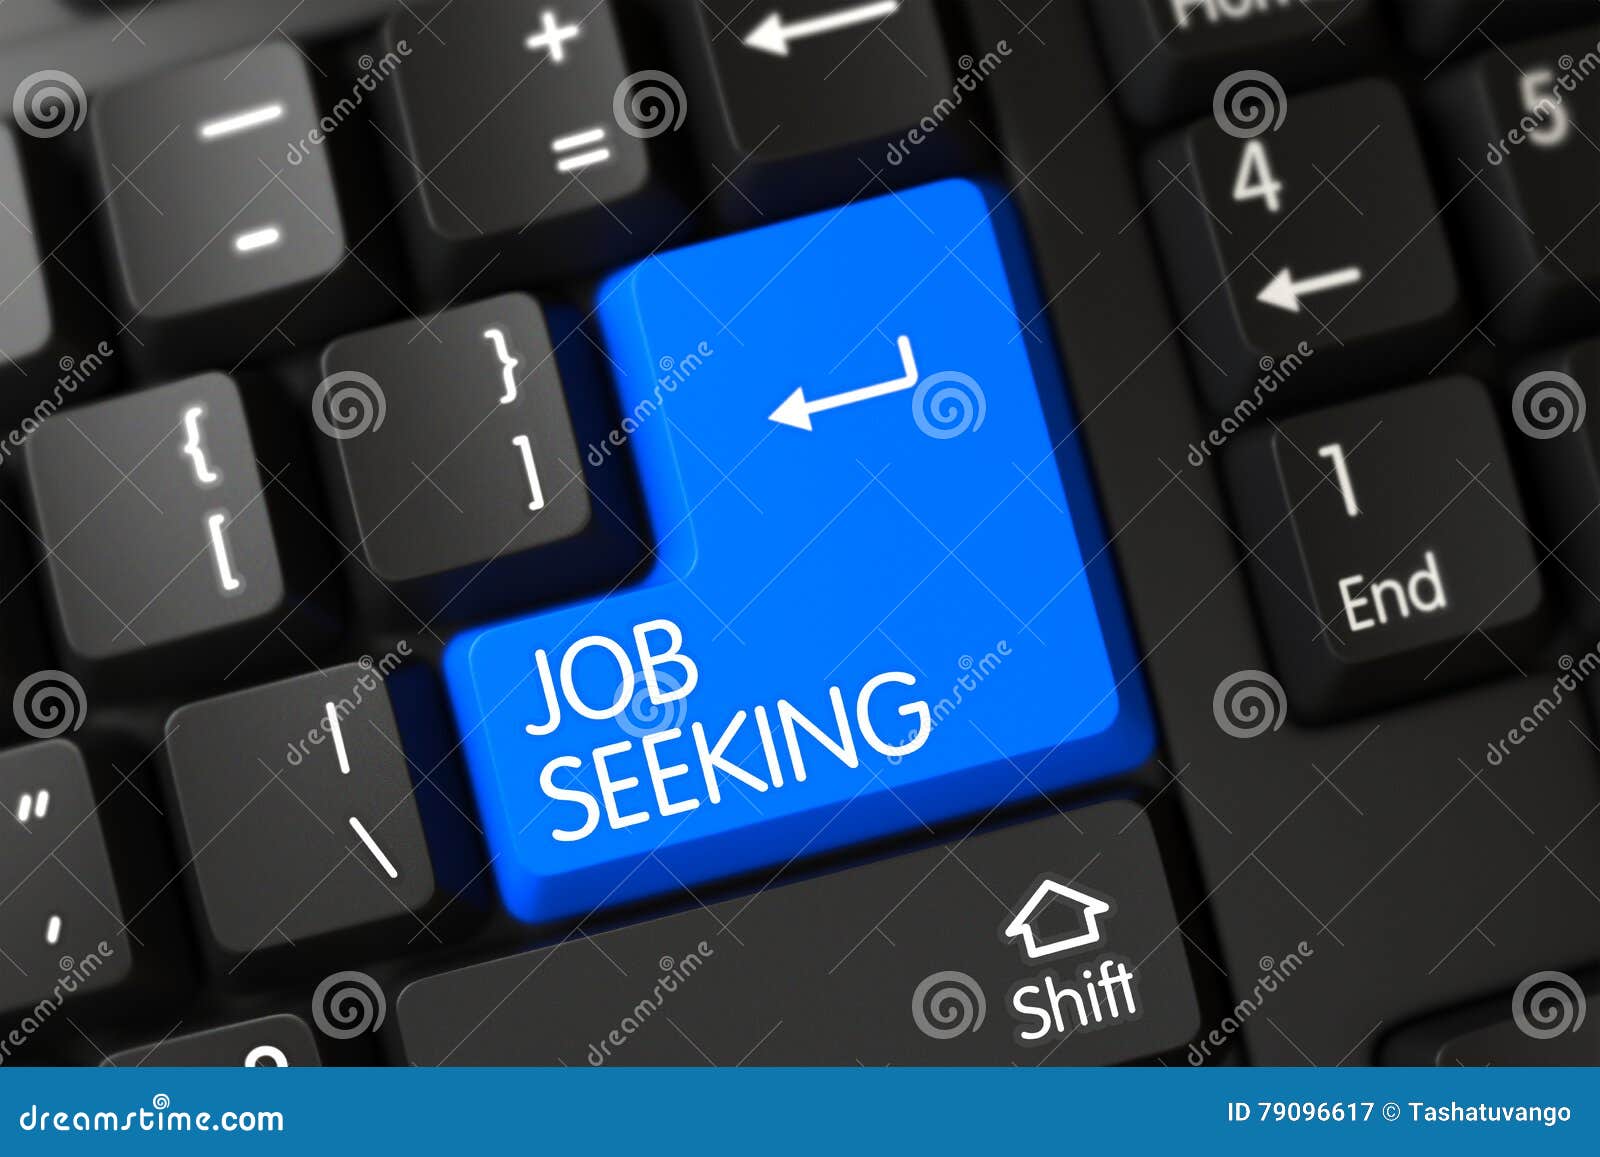 job seeking - modern button. 3d.